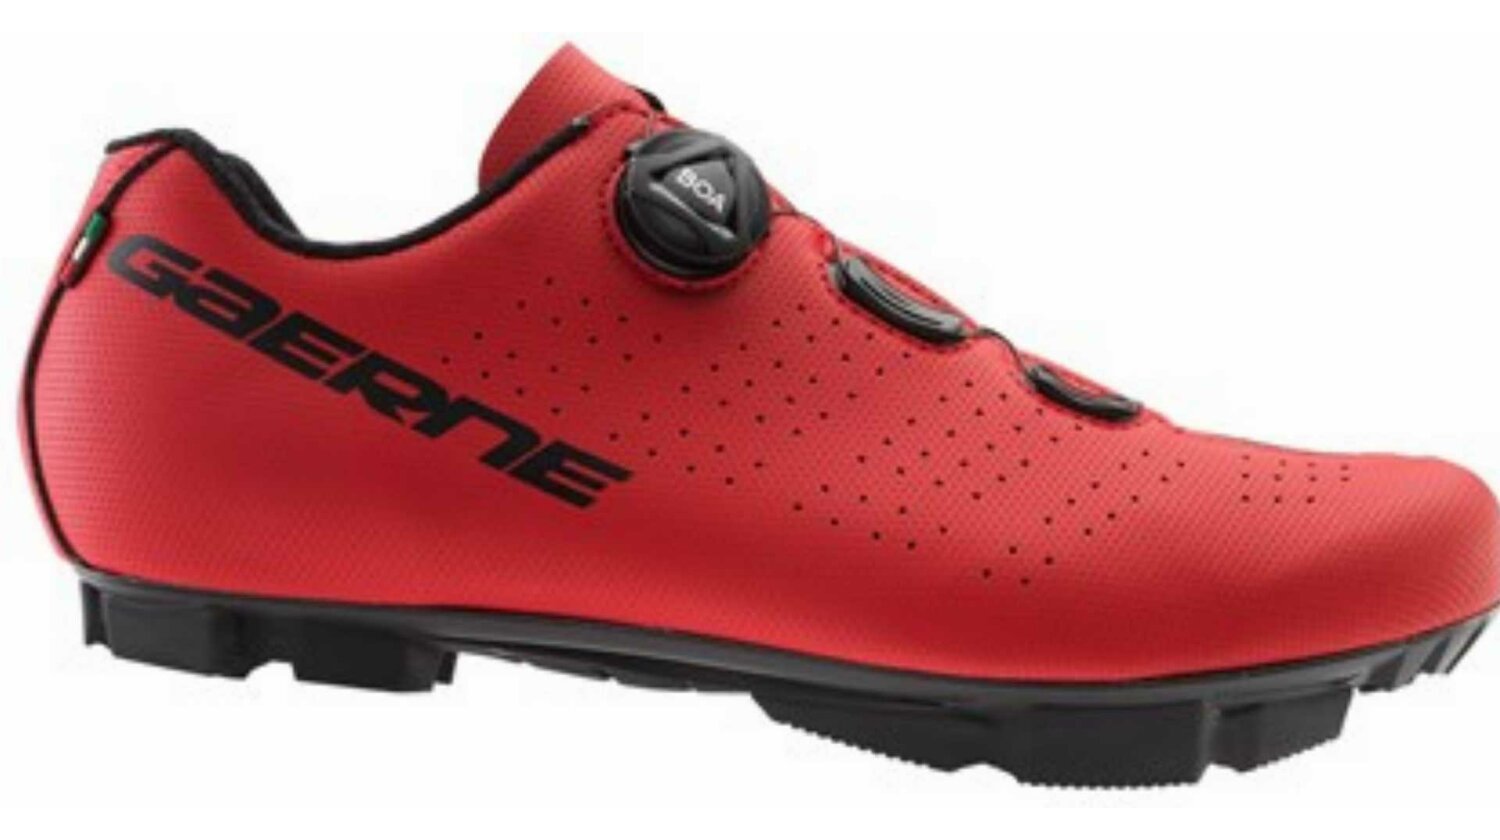 Gaerne G.Trail MTB-Schuhe matt red